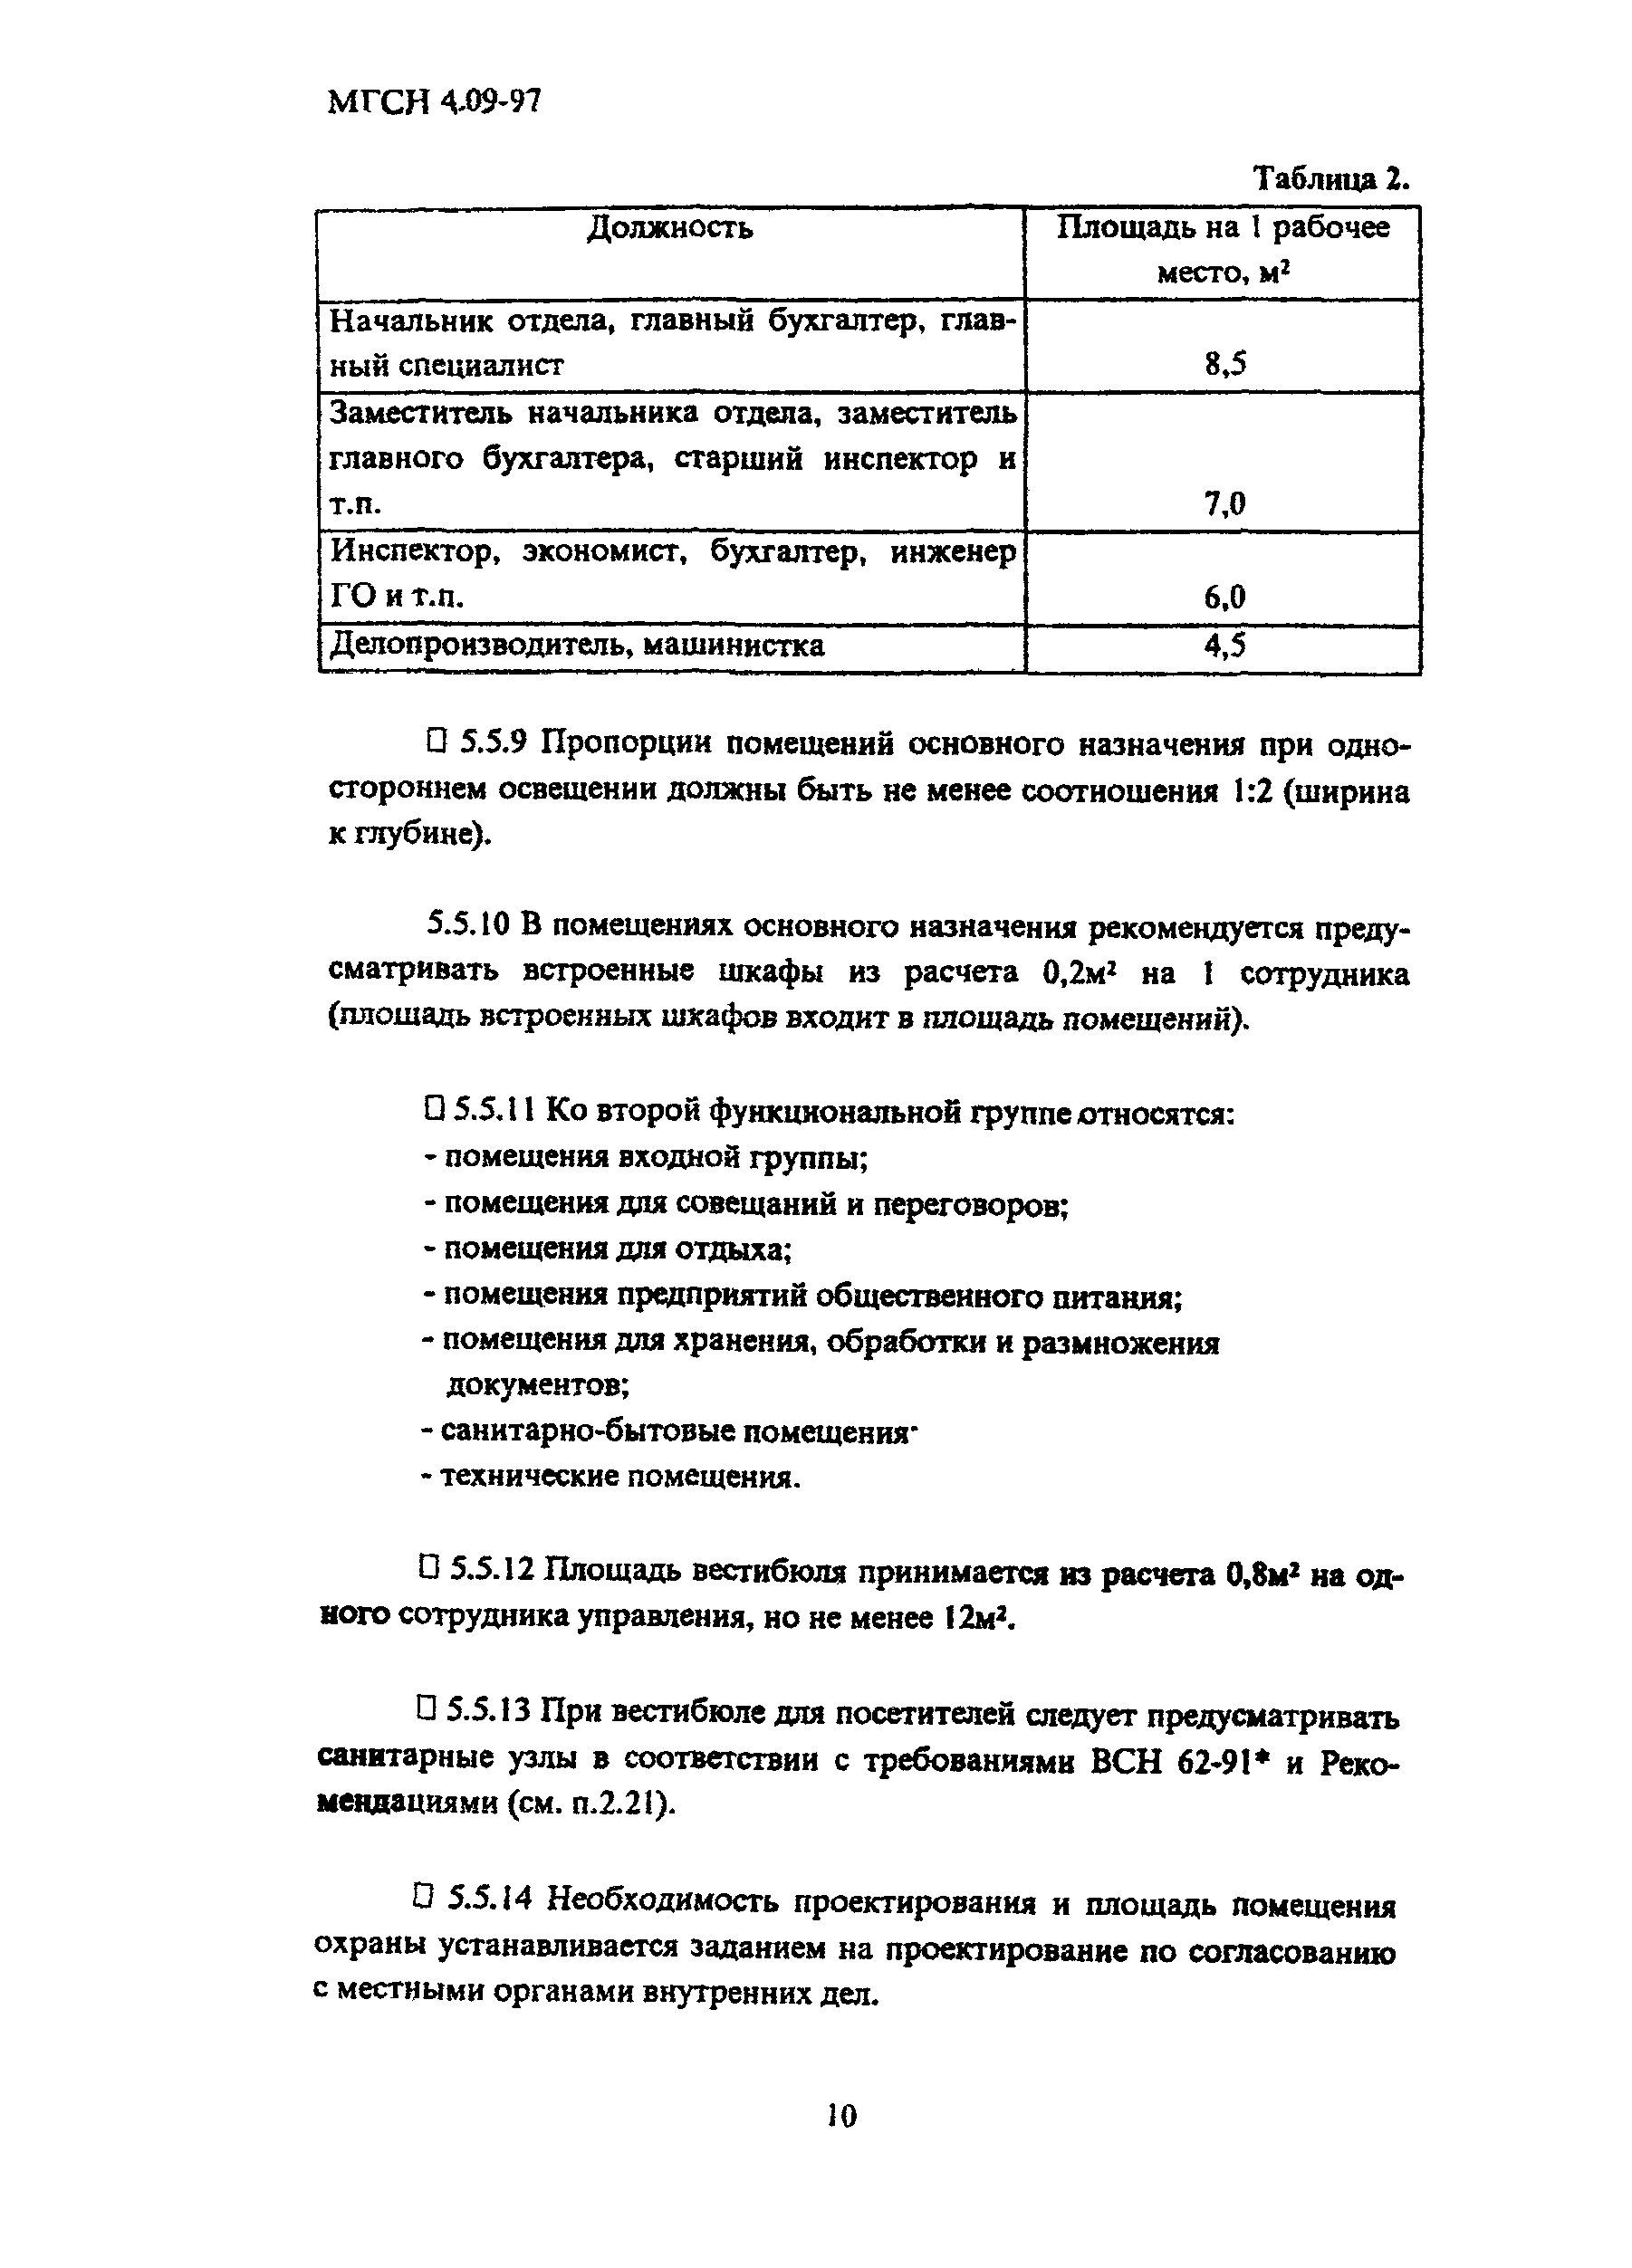 ТСН 31-311-98